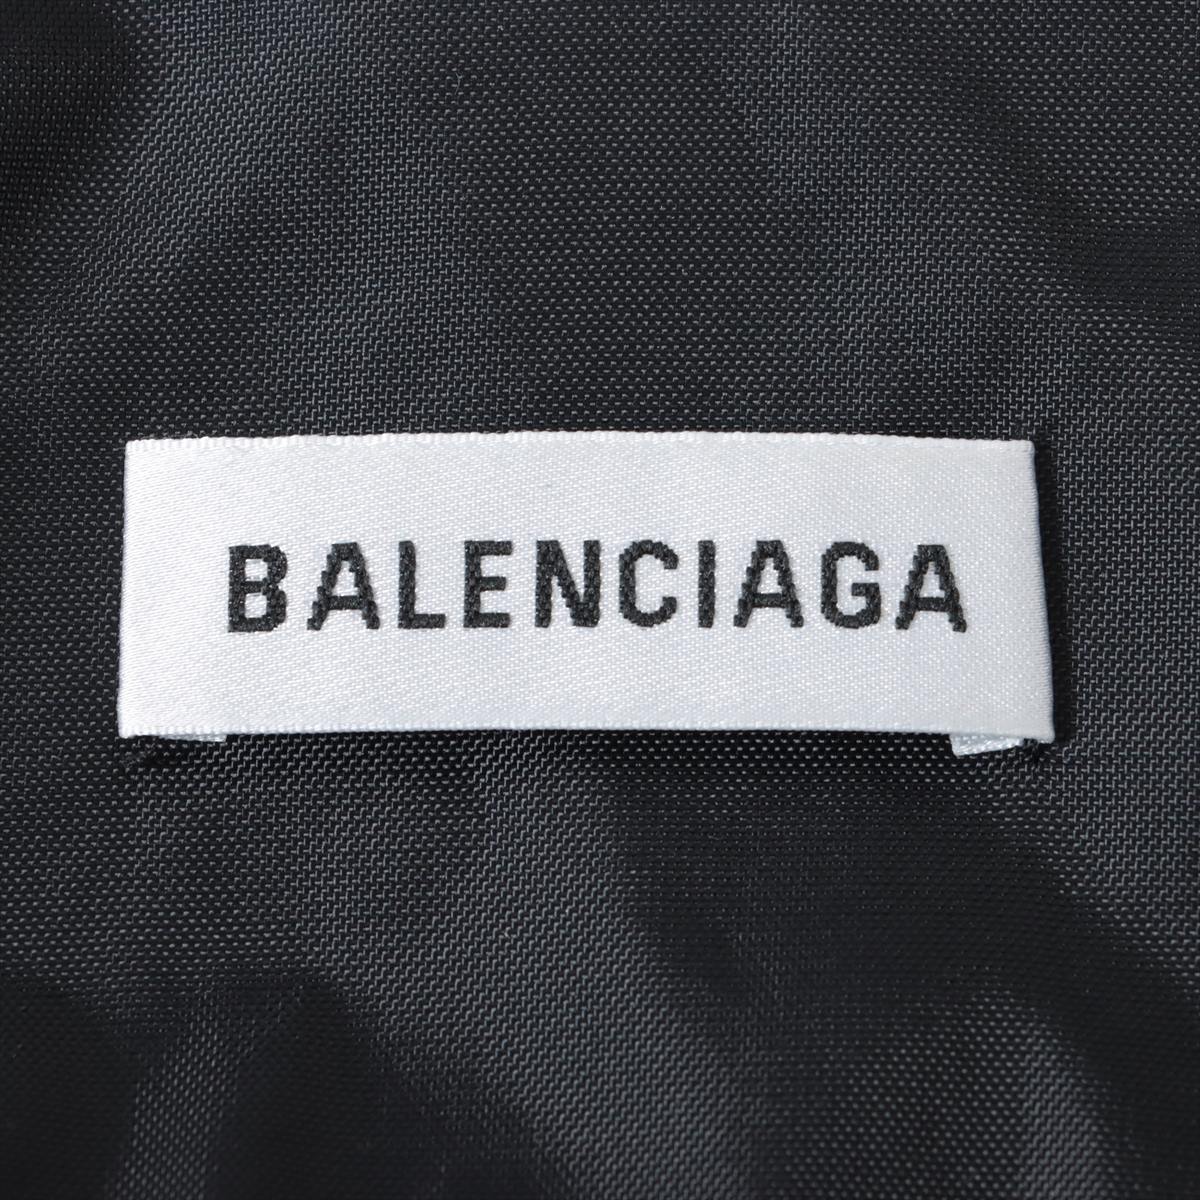 Balenciaga 18 years Cotton & nylon Jacket 34 Men's Gray x white  529213